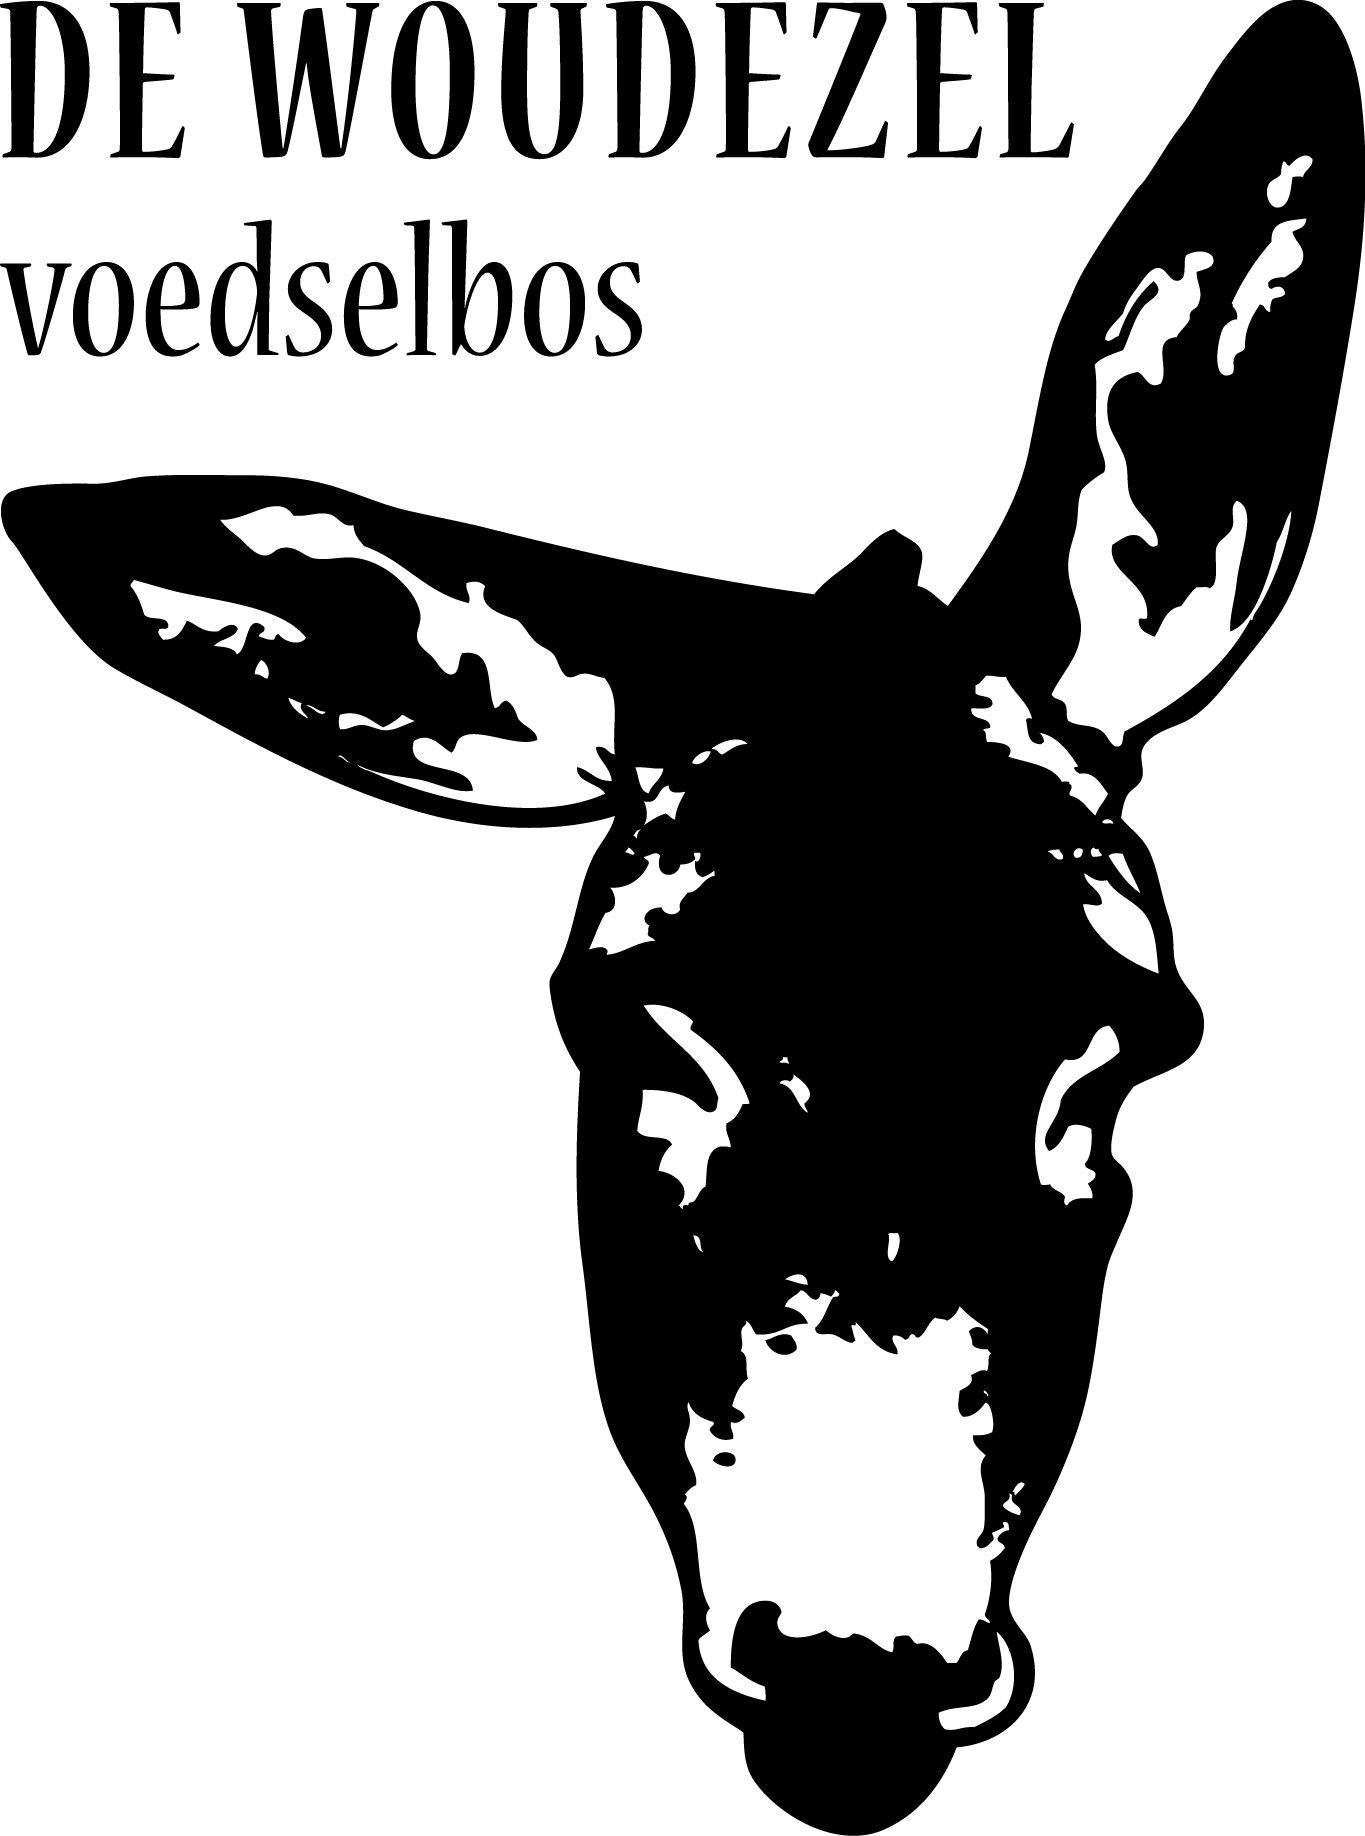 De Woudezel voedselbos logo